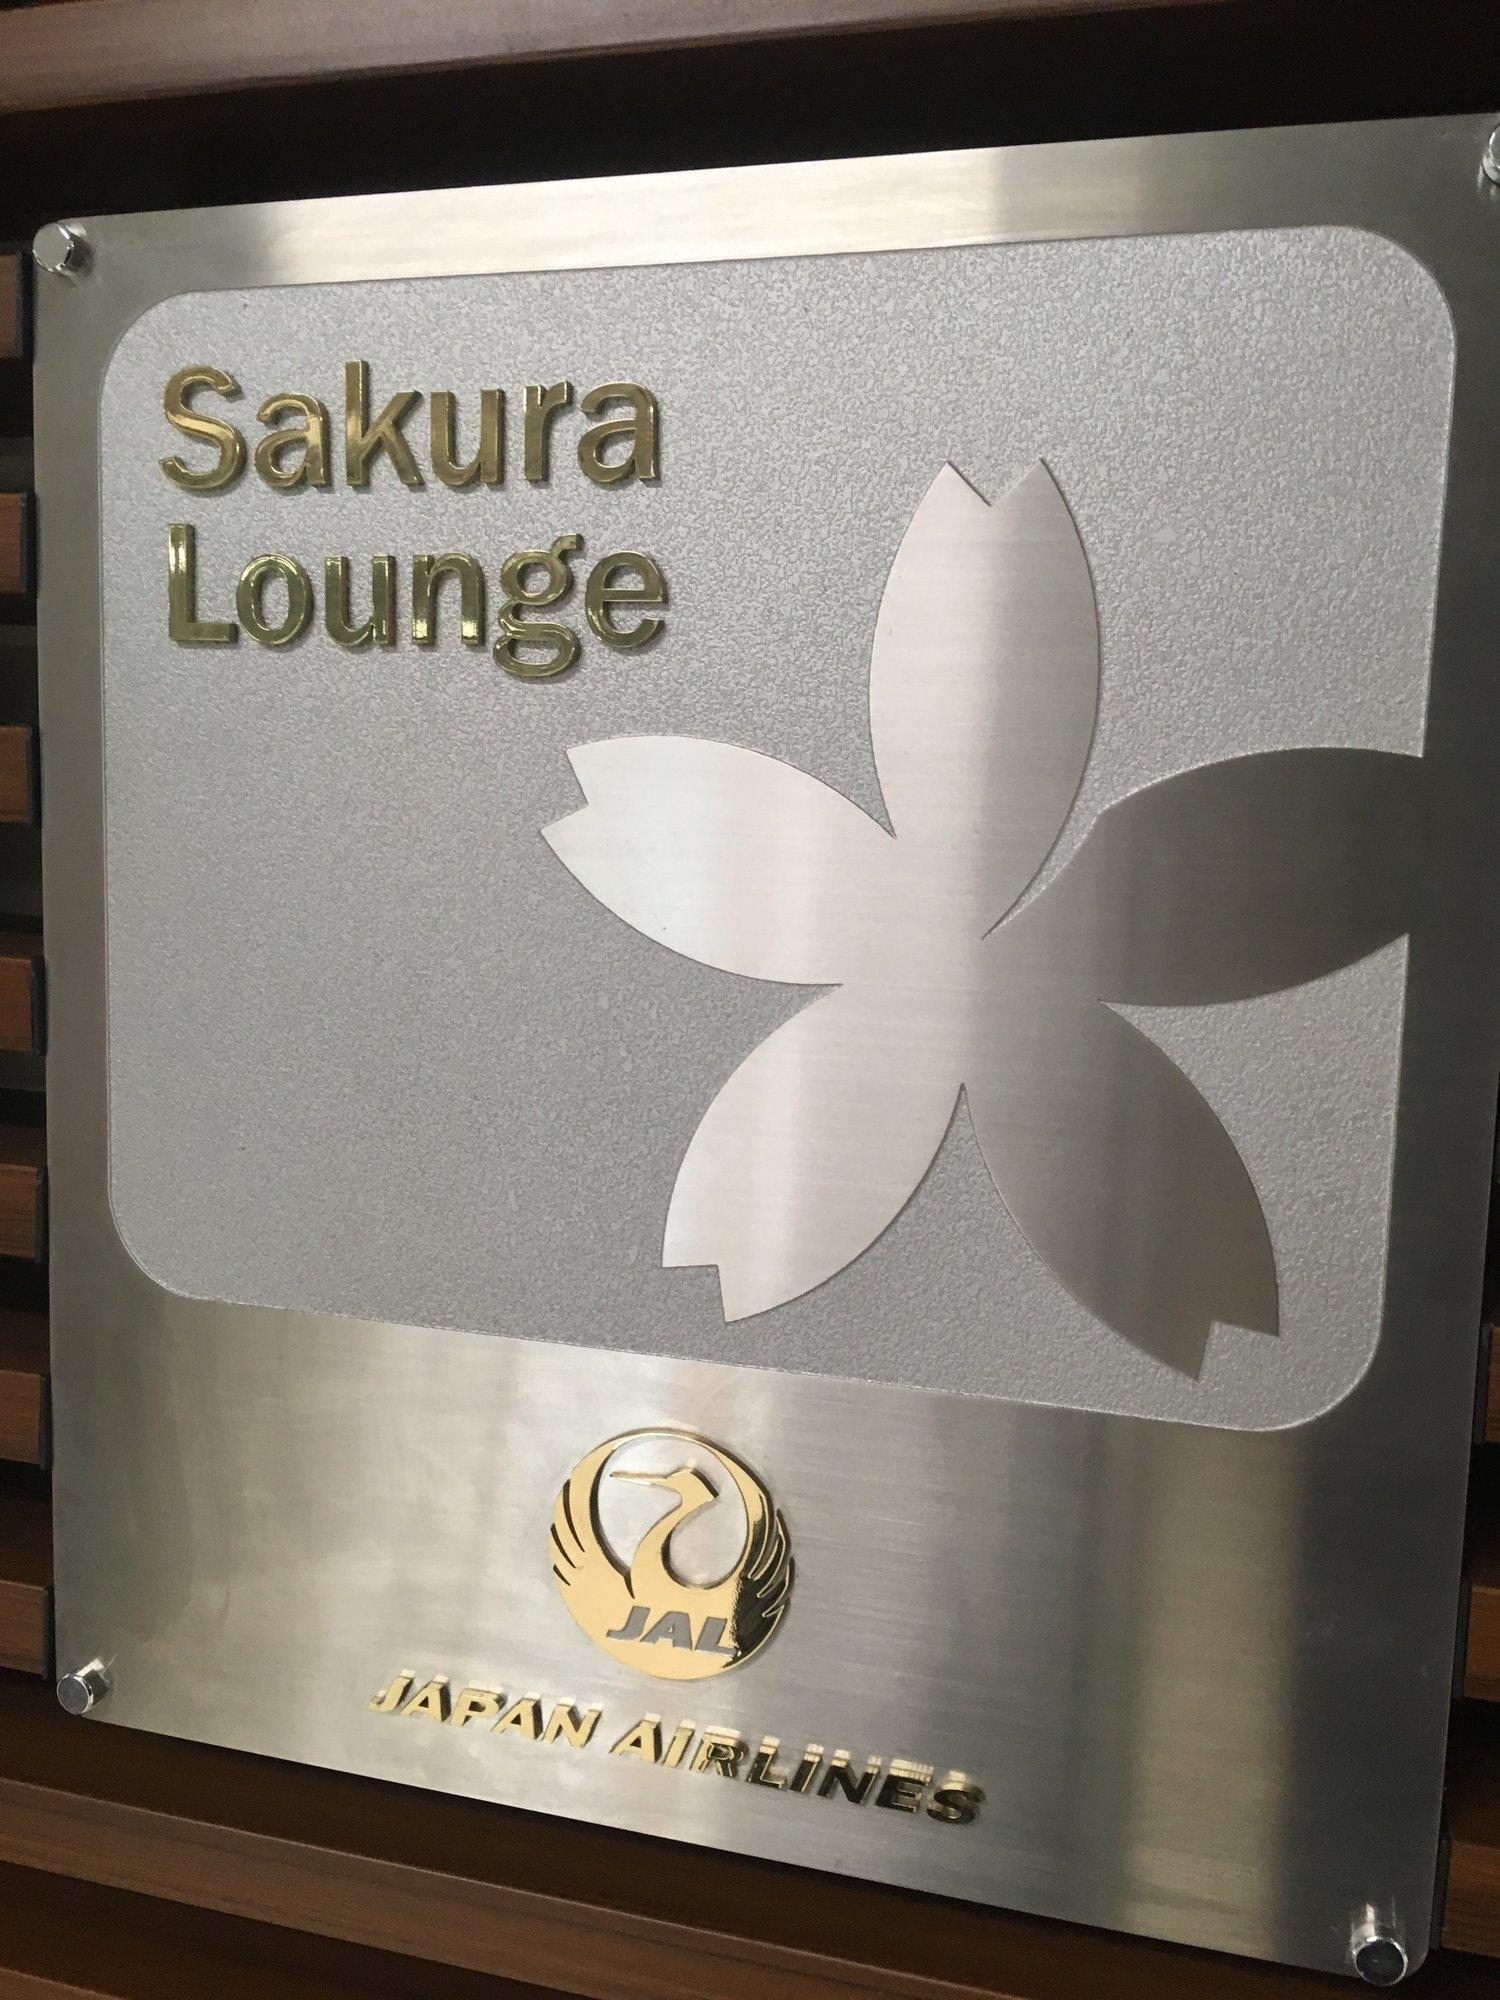 Japan Airlines JAL Sakura Lounge image 15 of 18